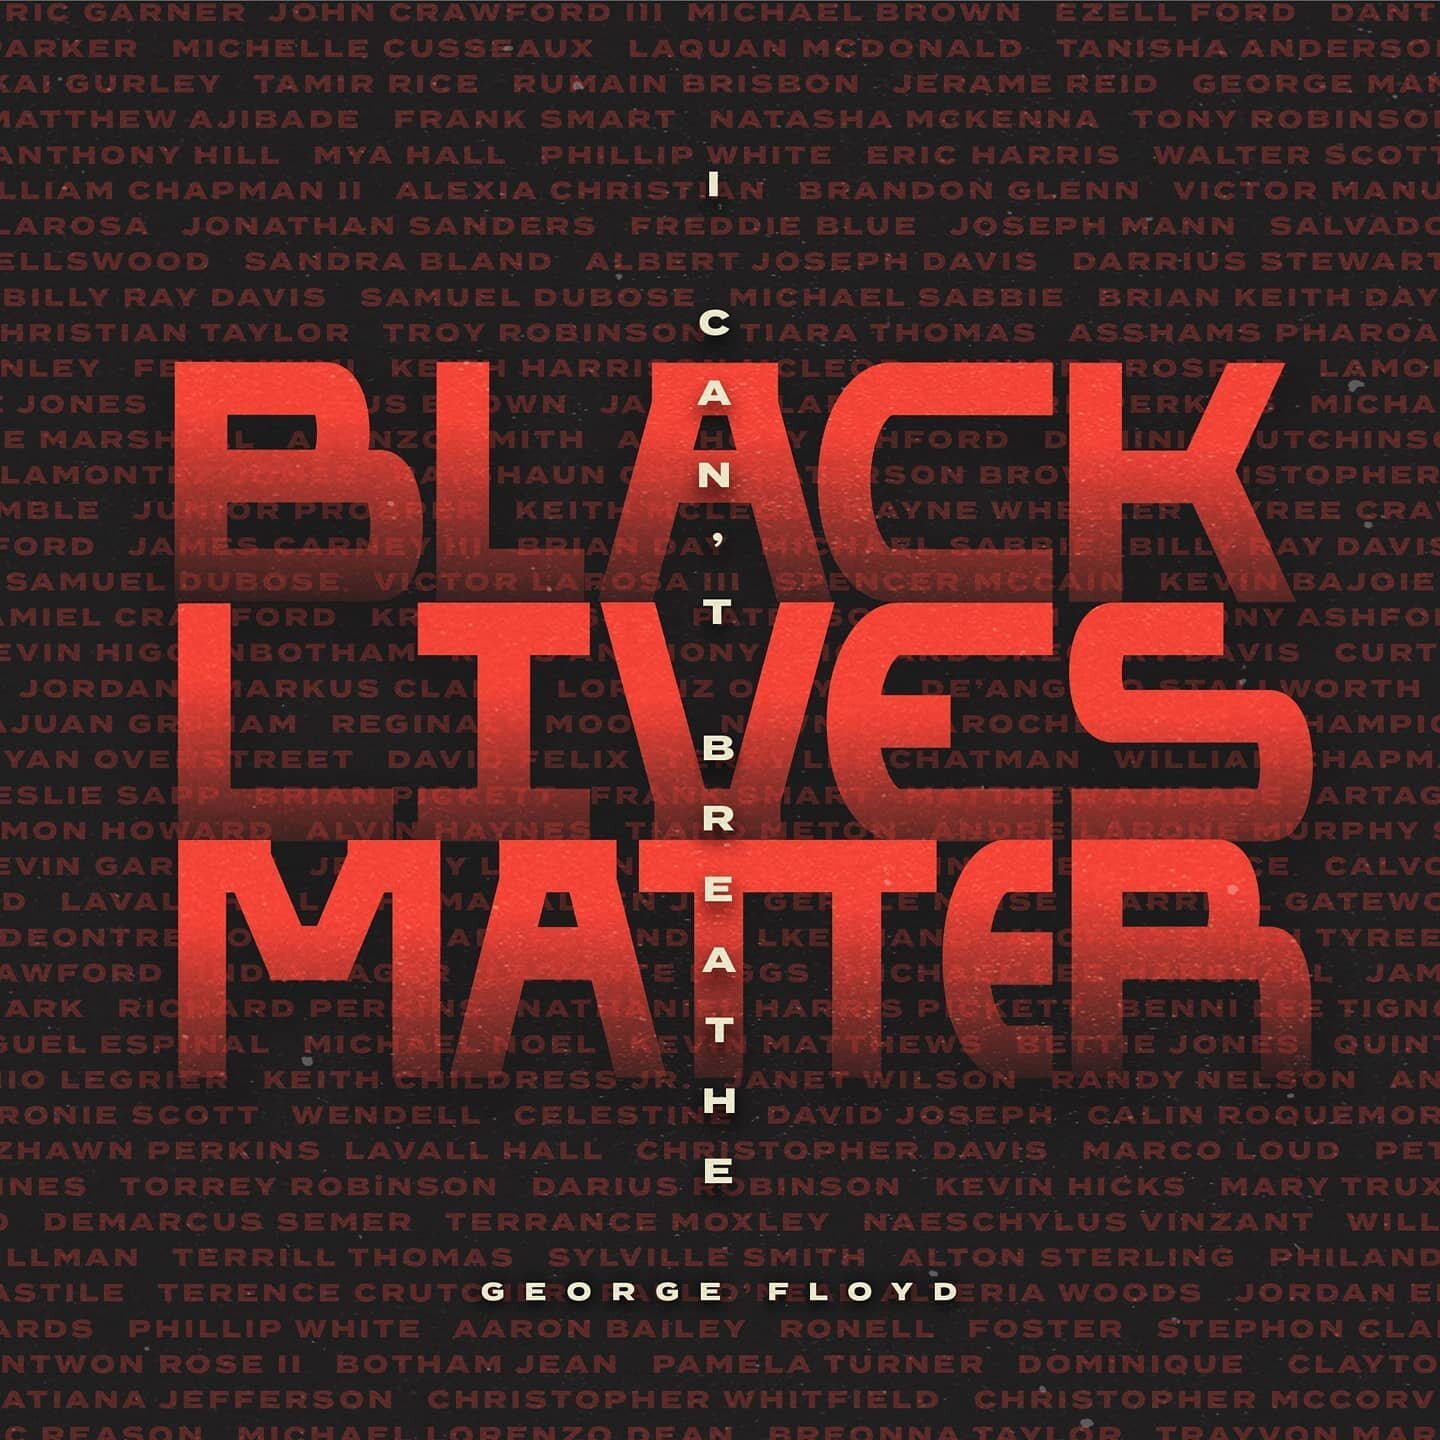 在接下来的一周，假设将重点介绍我们支持的三个组织的工作。第一个是“黑人的命也是命”。#黑人的命也重要#成立于2013年，是为了回应谋杀马丁的凶手被判无罪。黑人的生活